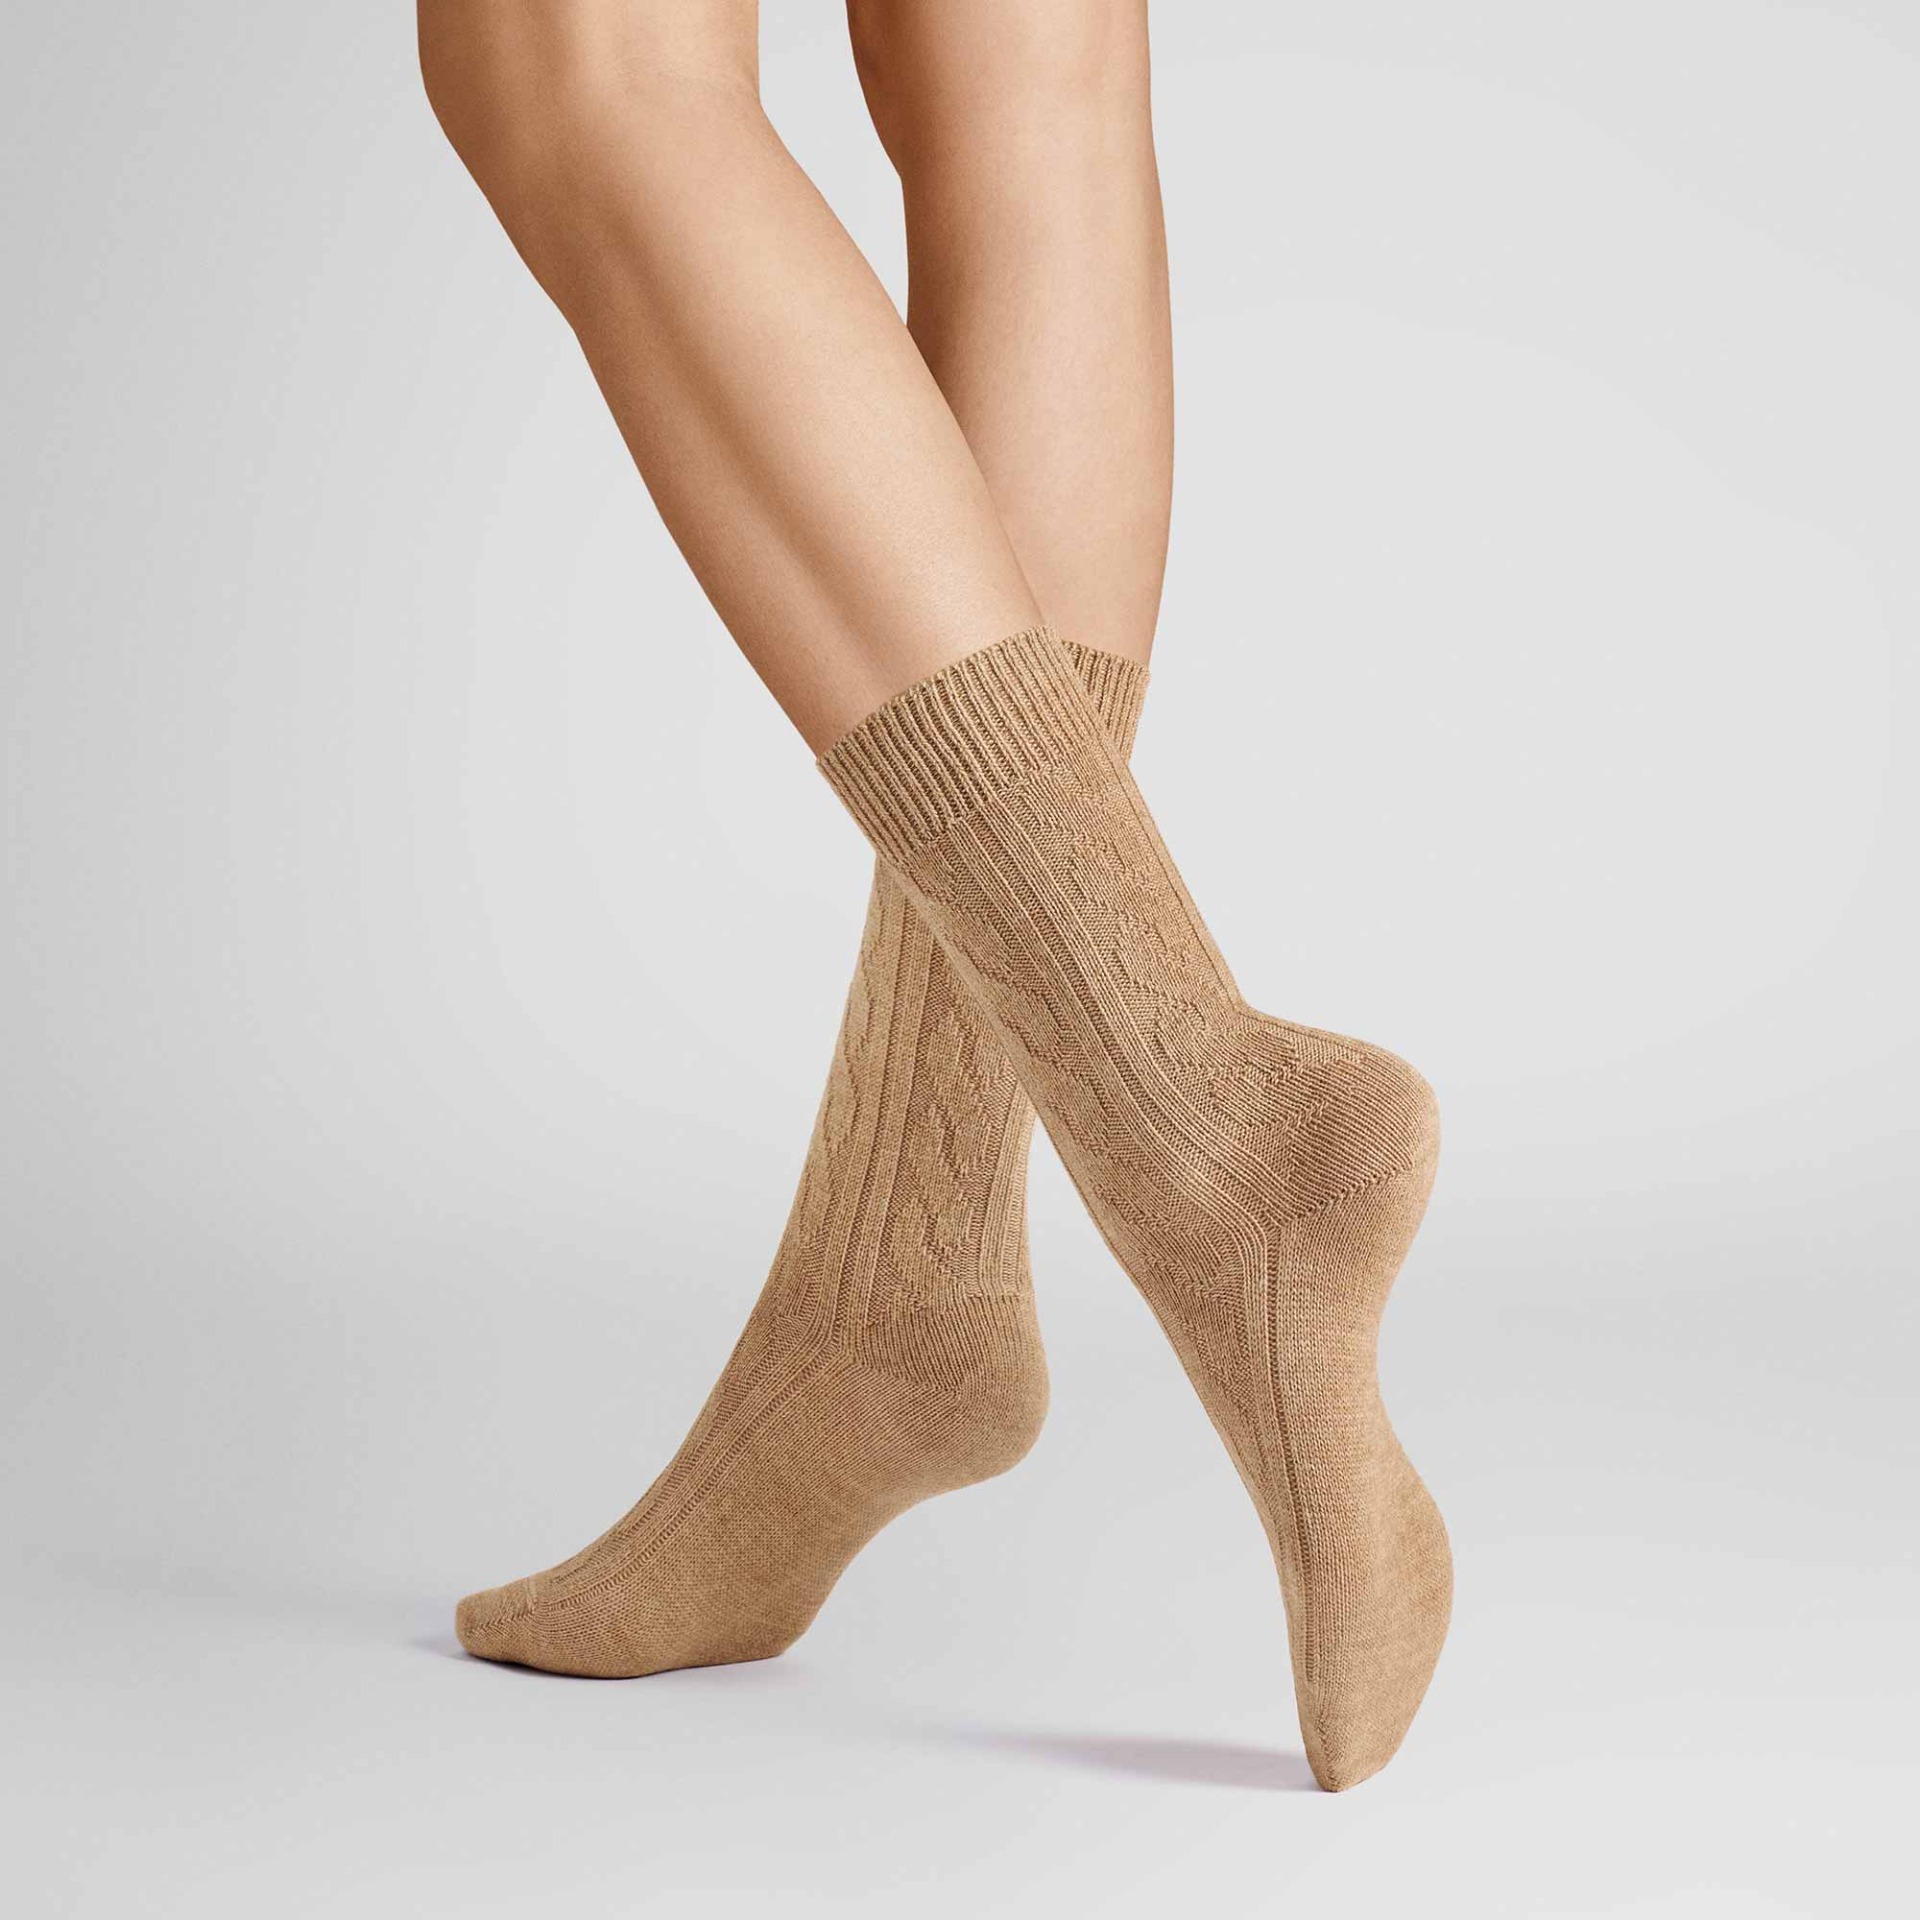 HUDSON Damen WINTER PLAIT -  39/42 - Wärmende Socken mit Zopf-Muster - Beigemel. 0723 (Dunkel Beige)